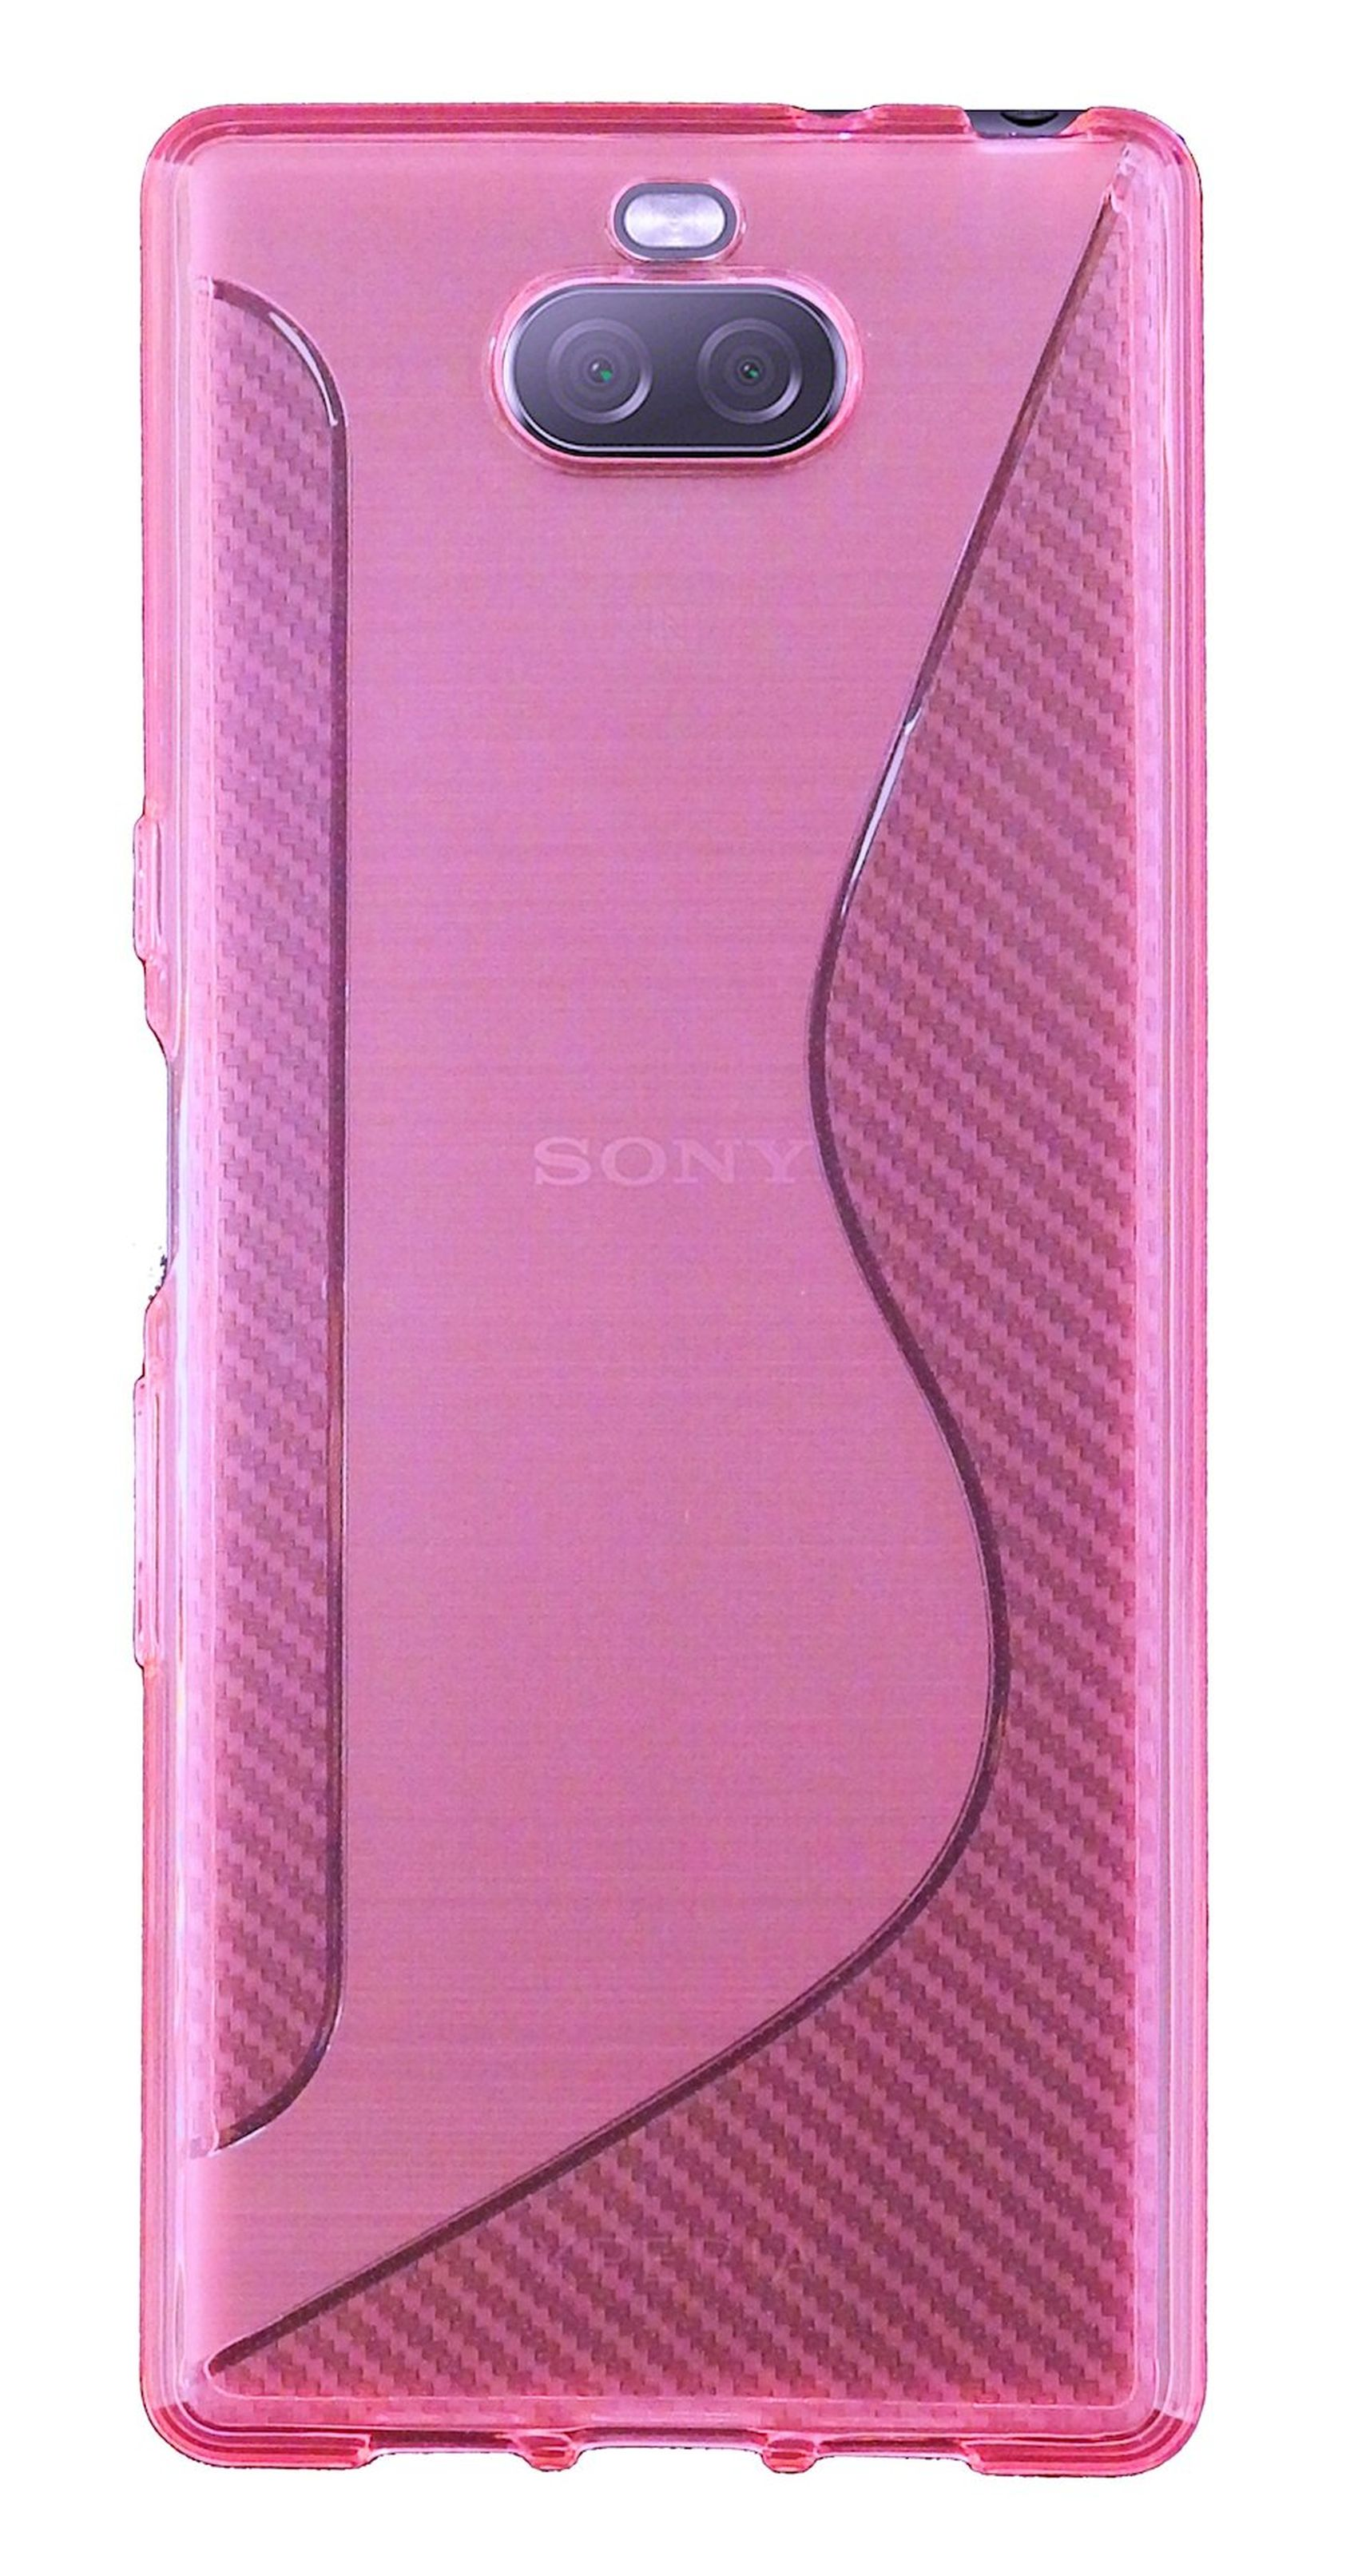 COFI S-Line Cover, Bumper, Sony, Rosa 10, Xperia